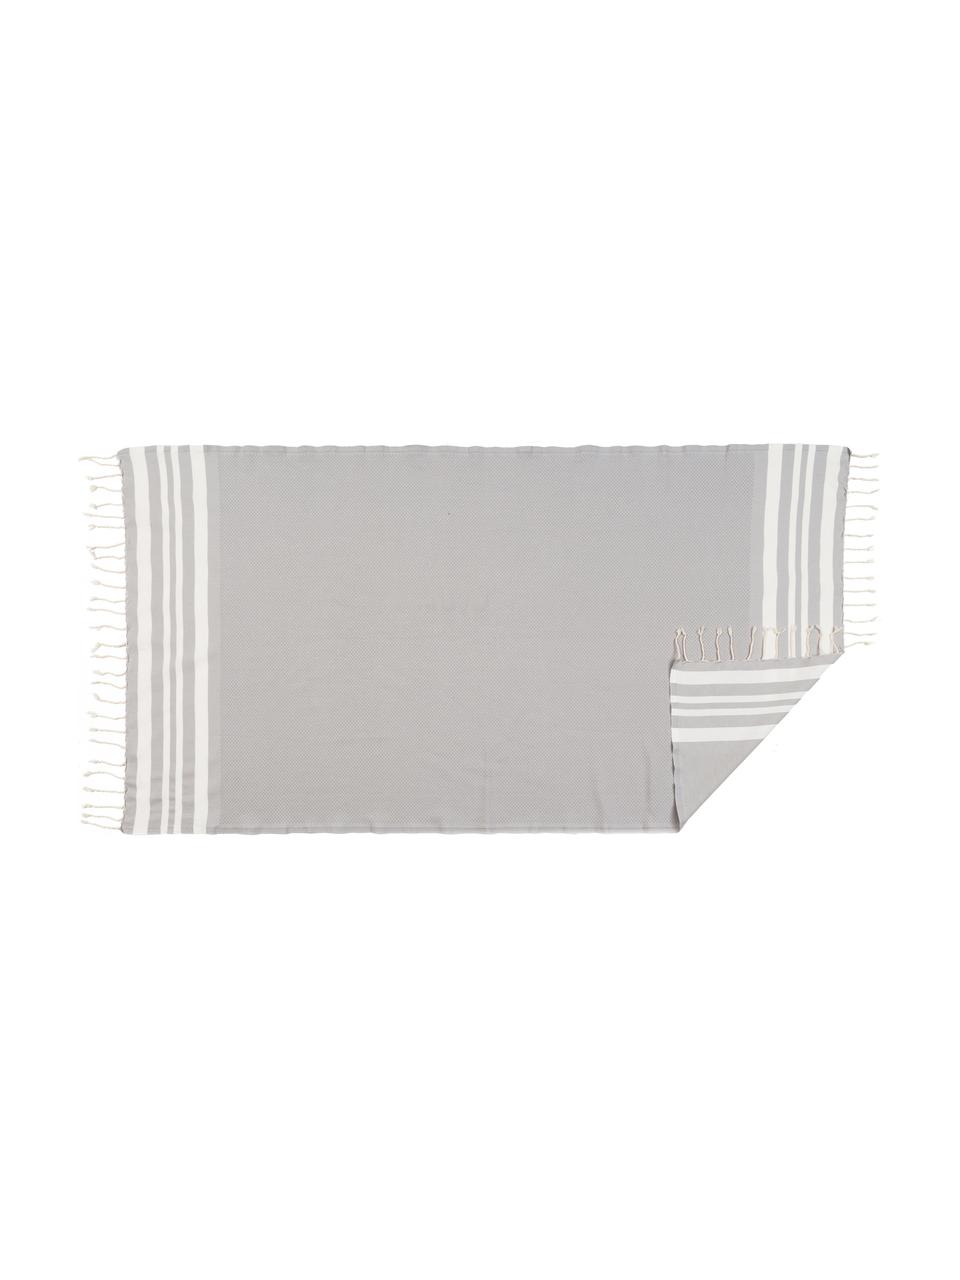 Súprava ľahkých uterákov Hamptons, 3 diely, Perlovo sivá, biela